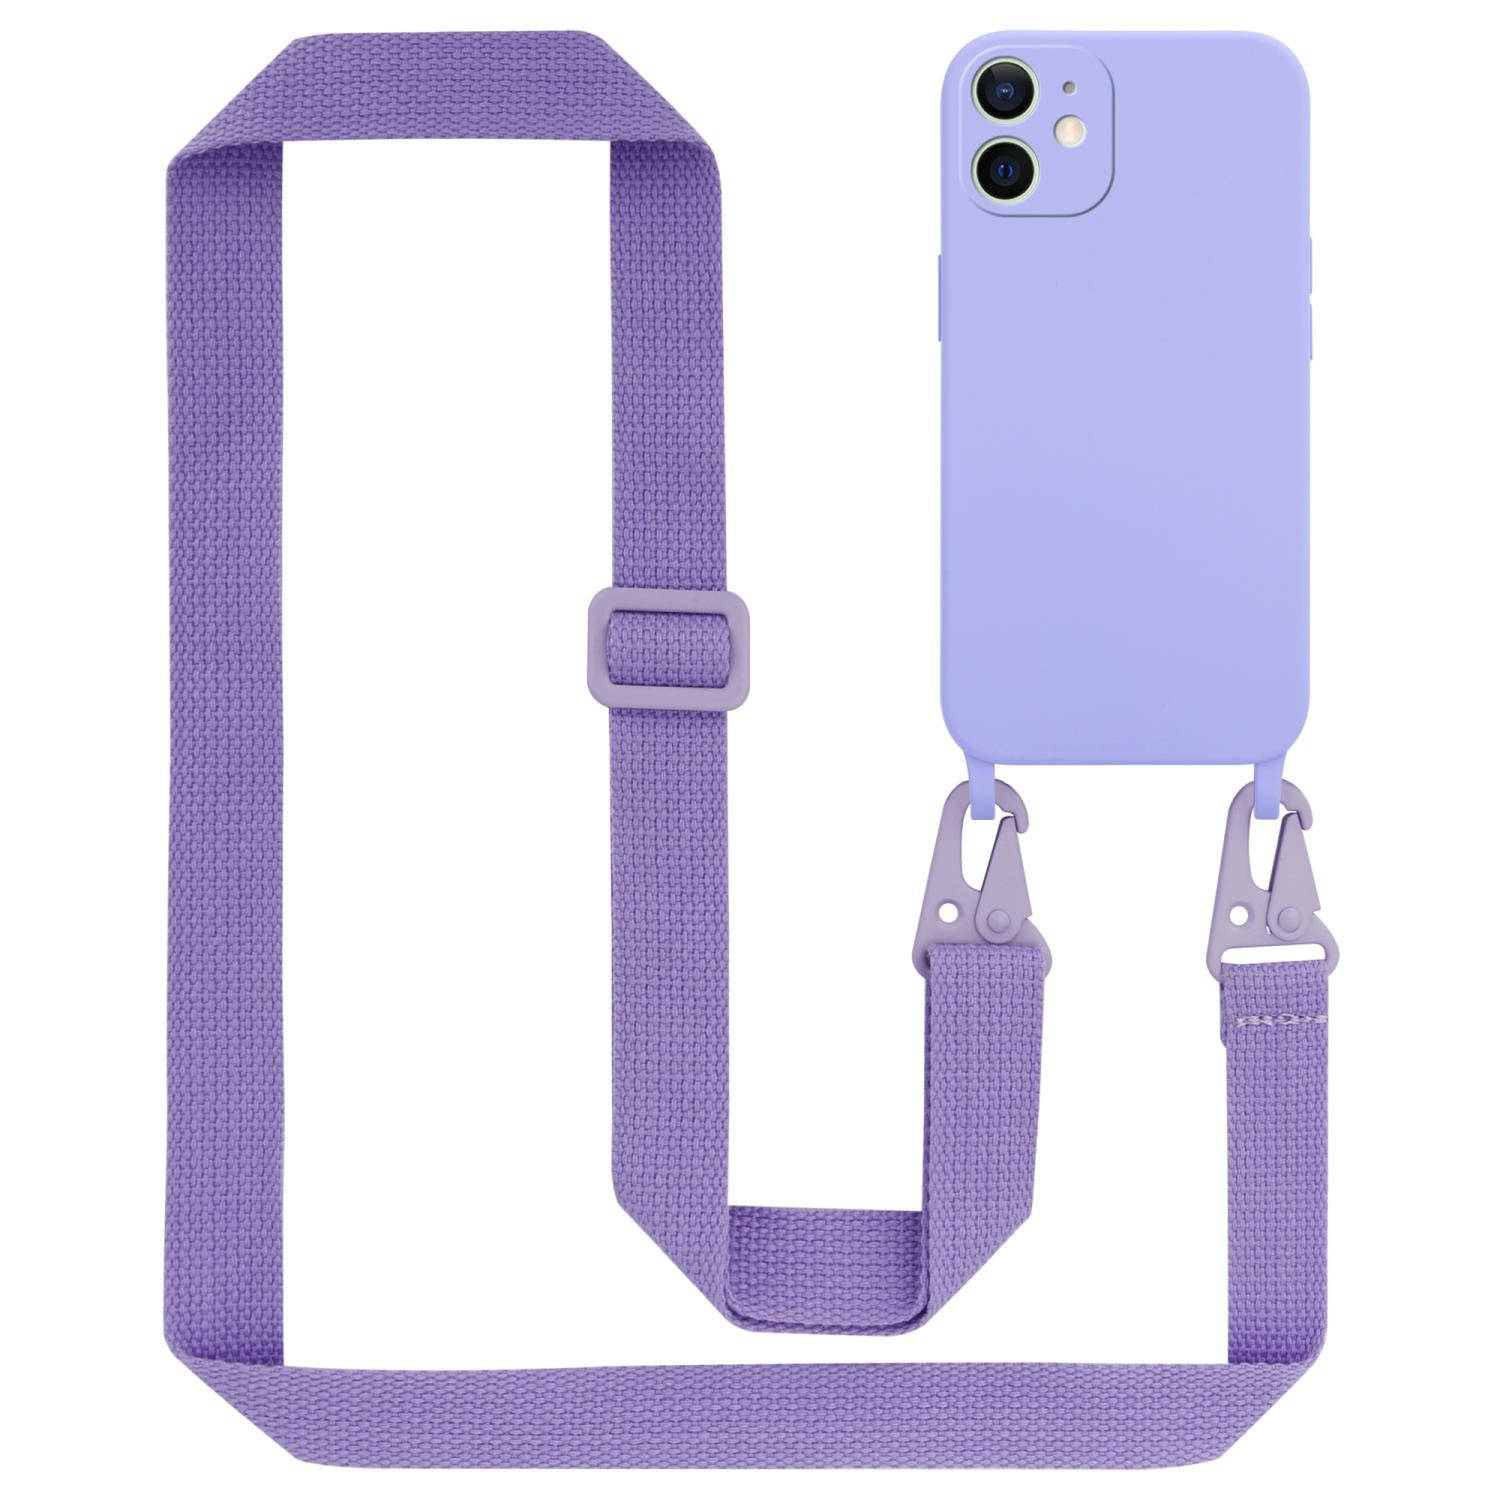 Cadorabo Mobiele telefoon ketting voor Apple iPhone 12 MINI in LIQUID LICHT PAARS - Silicone beschermhoes met lengte verstelbare koord riem